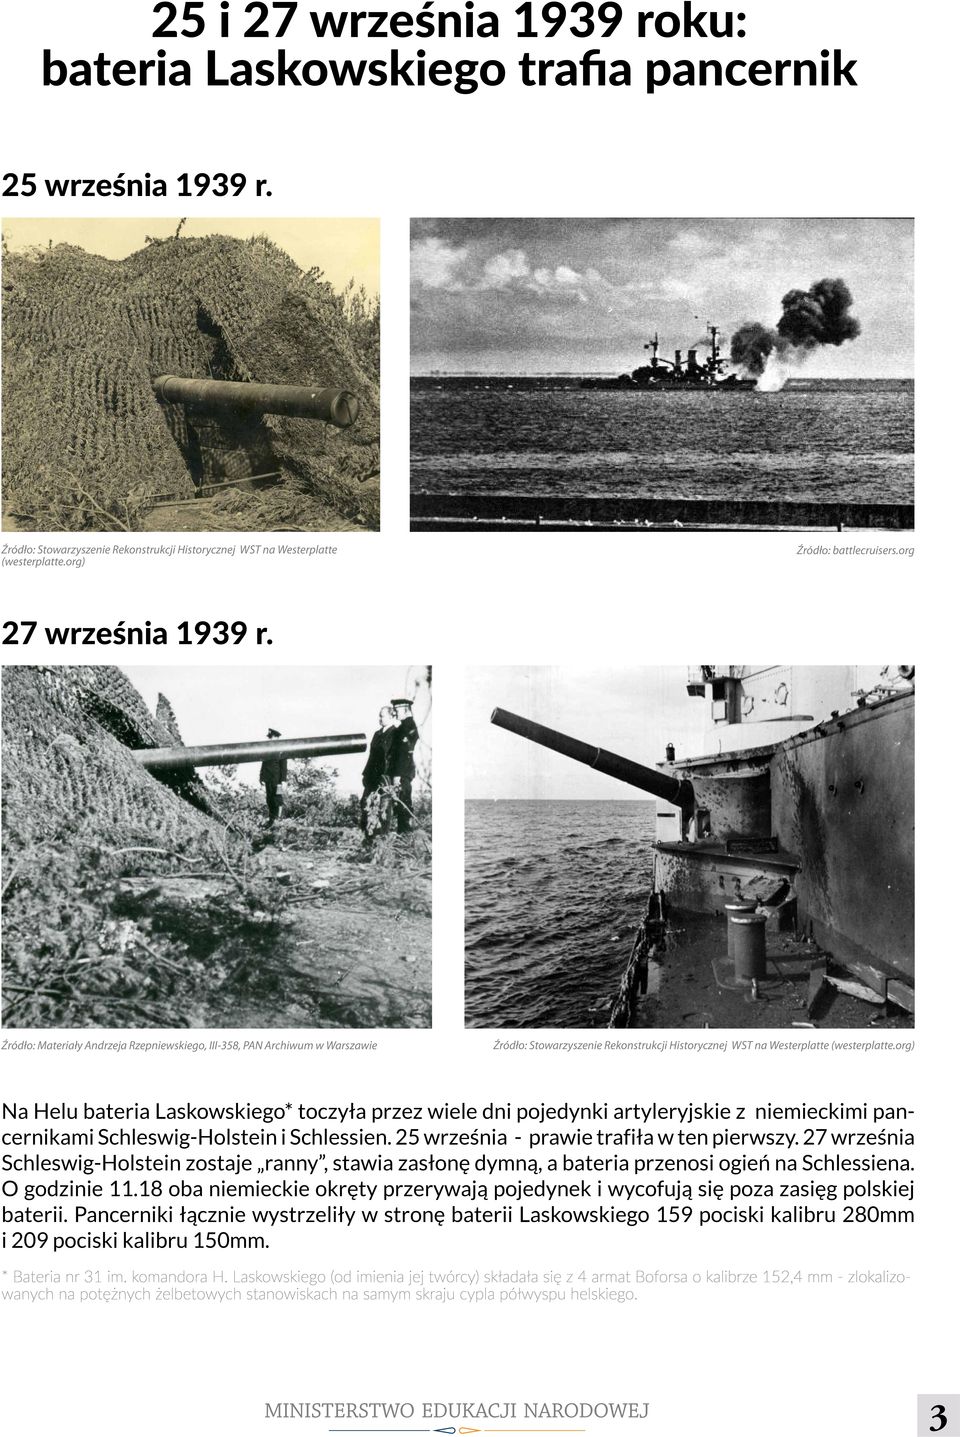 org) Na Helu bateria Laskowskiego* toczyła przez wiele dni pojedynki artyleryjskie z niemieckimi pancernikami Schleswig-Holstein i Schlessien. 25 września - prawie trafiła w ten pierwszy.